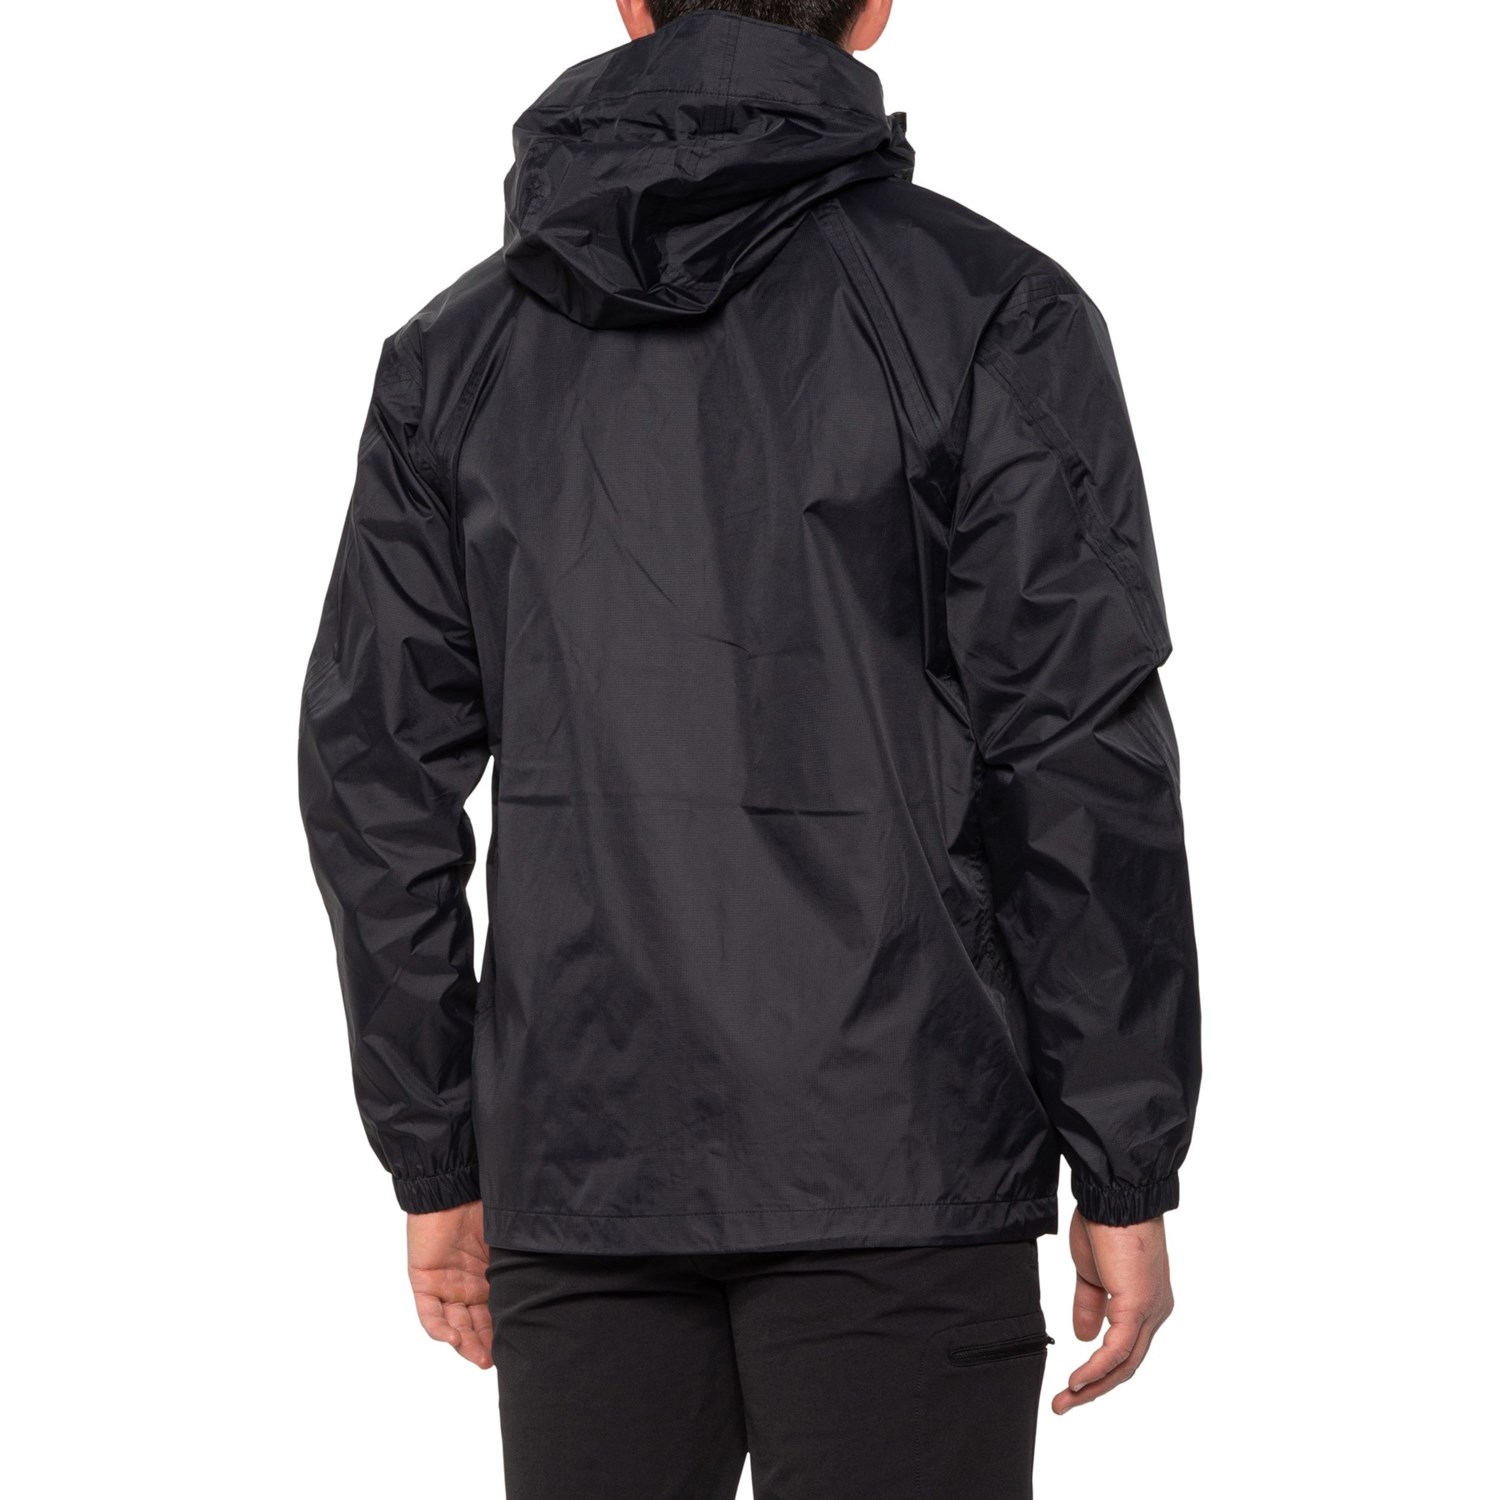 GANDER MTN Thunder Cloud Woven Rain Jacket (For Men) - Save 23%